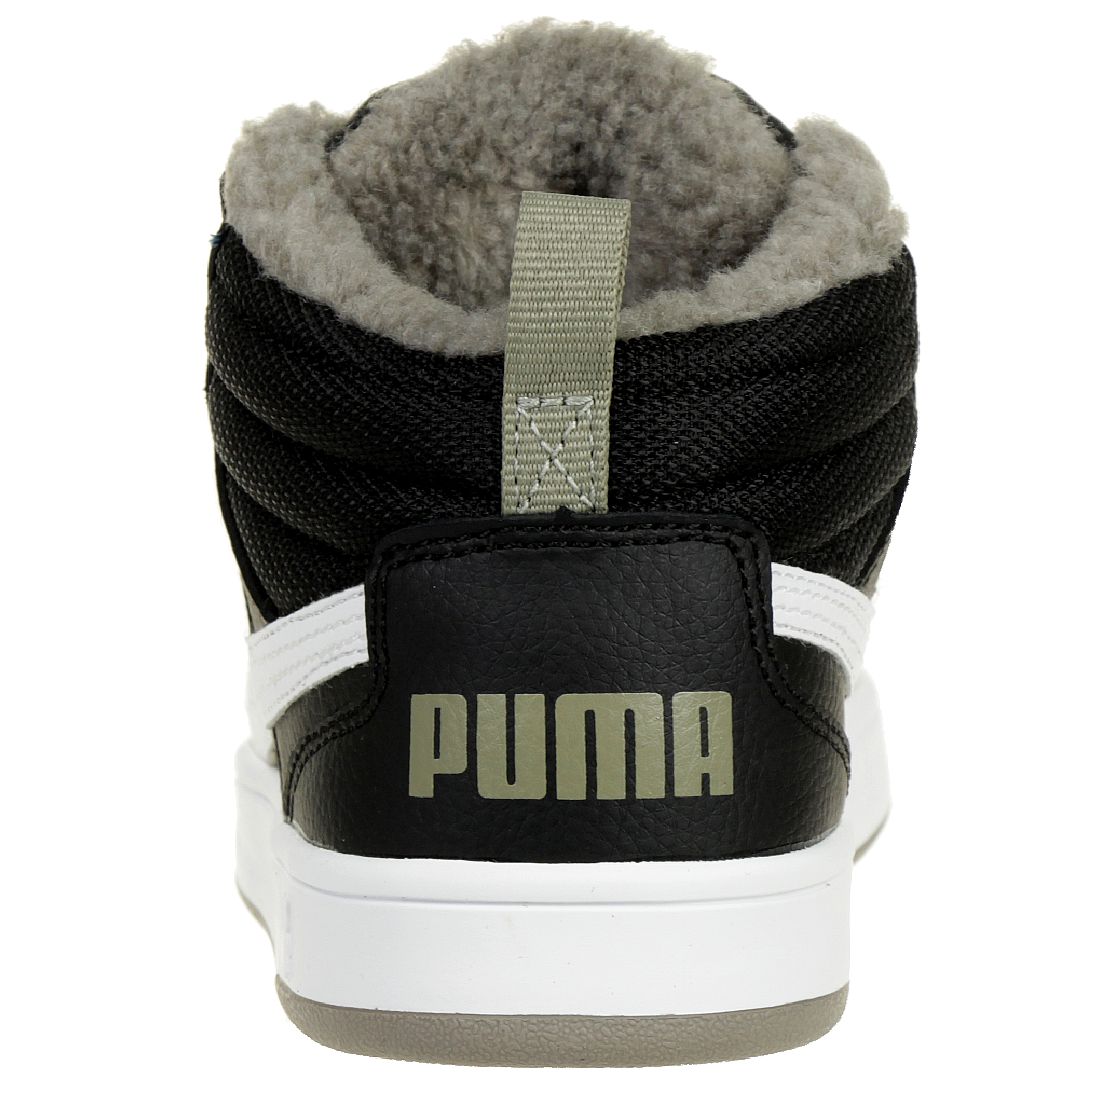 Puma Rebound Street V2 Fur PS Winterstiefel Boots Kinder schwarz gefüttert warm